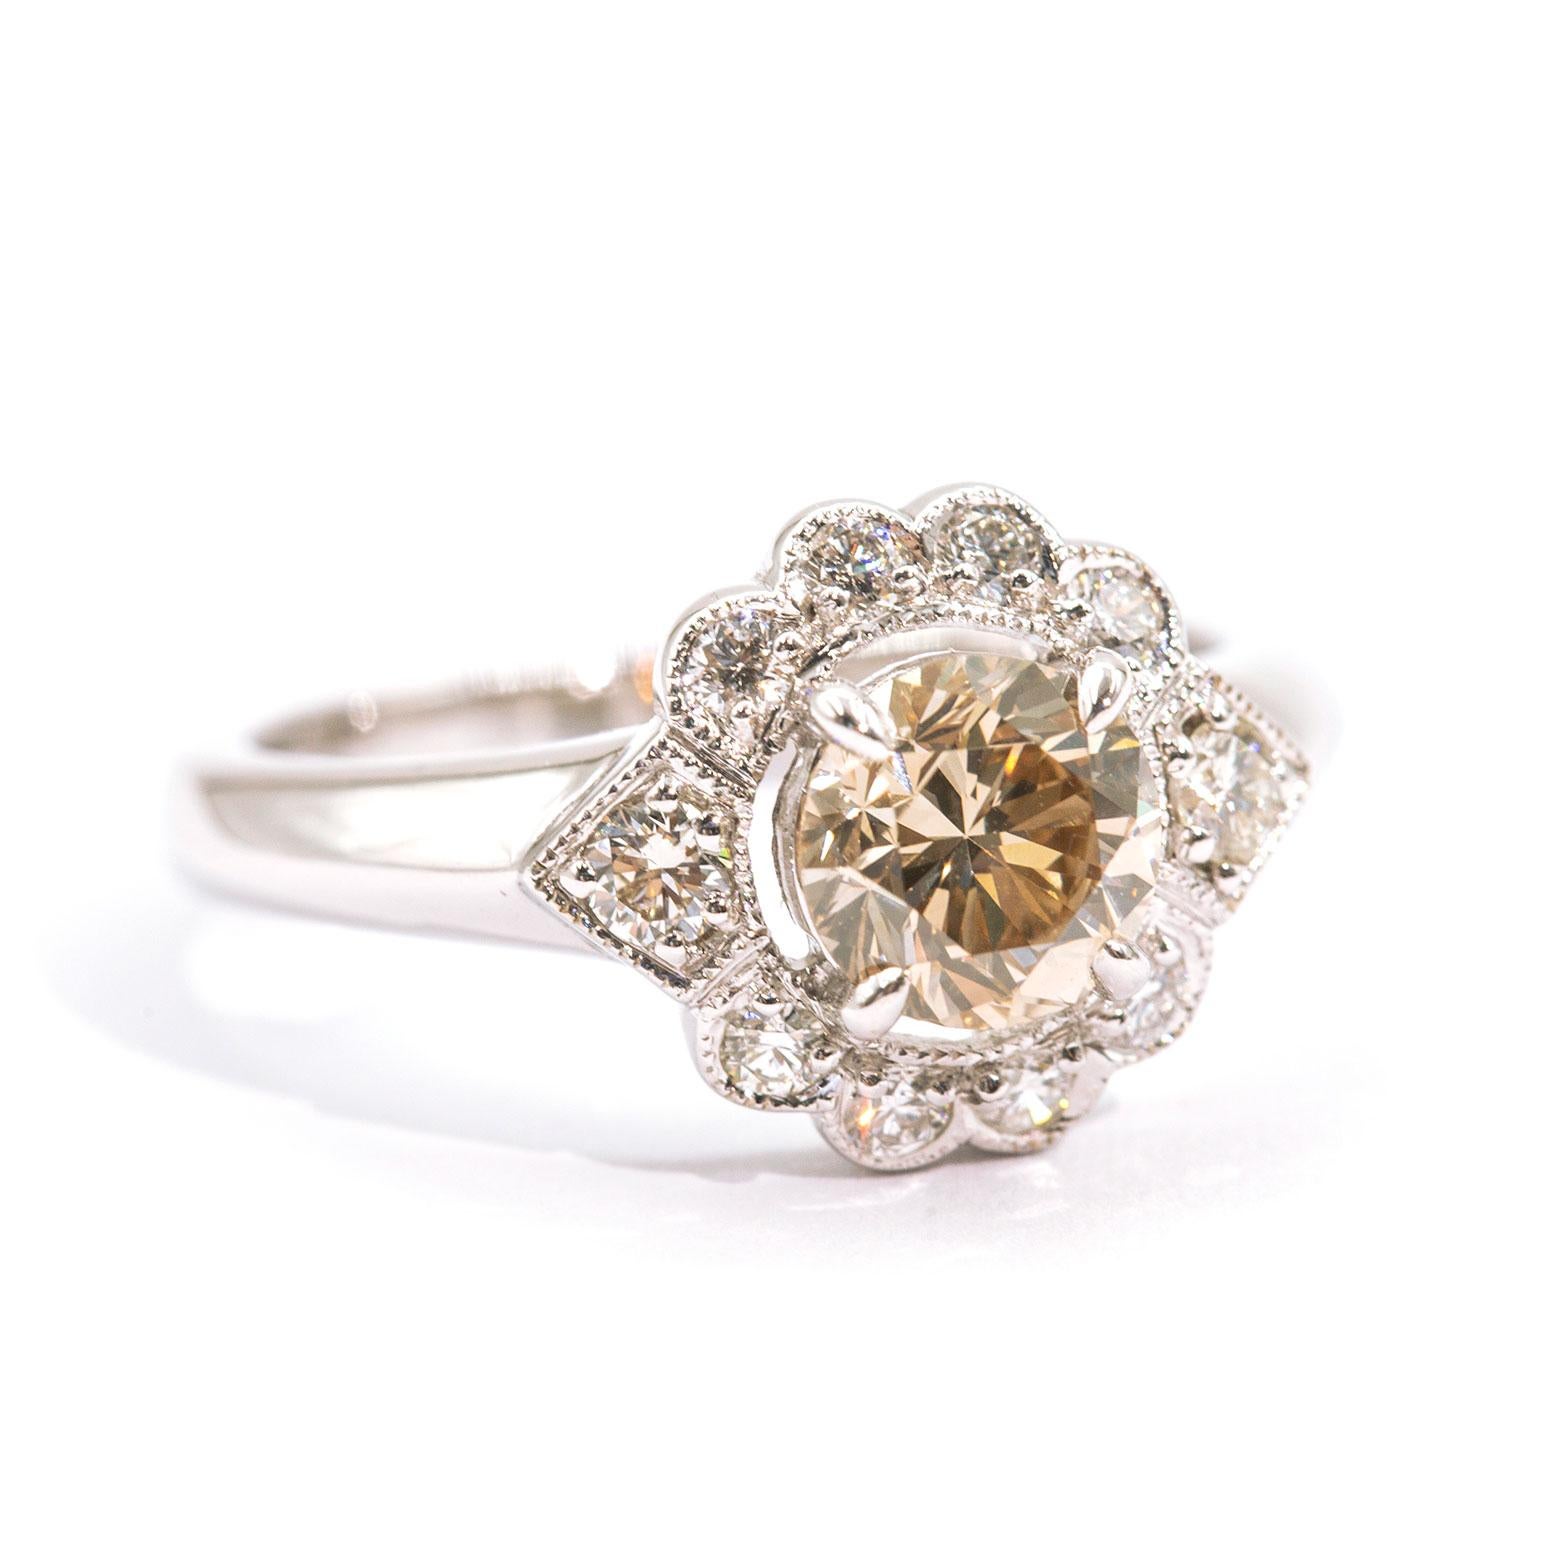 Dieser aus 18 Karat Weißgold geschmiedete, vom Vintage-Stil inspirierte Halo-Cluster-Ring verfügt über ein hochglanzpoliertes, flaches Band mit einem funkelnden, 1,03 Karat schweren, ADGL-zertifizierten, runden, champagnerfarbenen Diamanten im